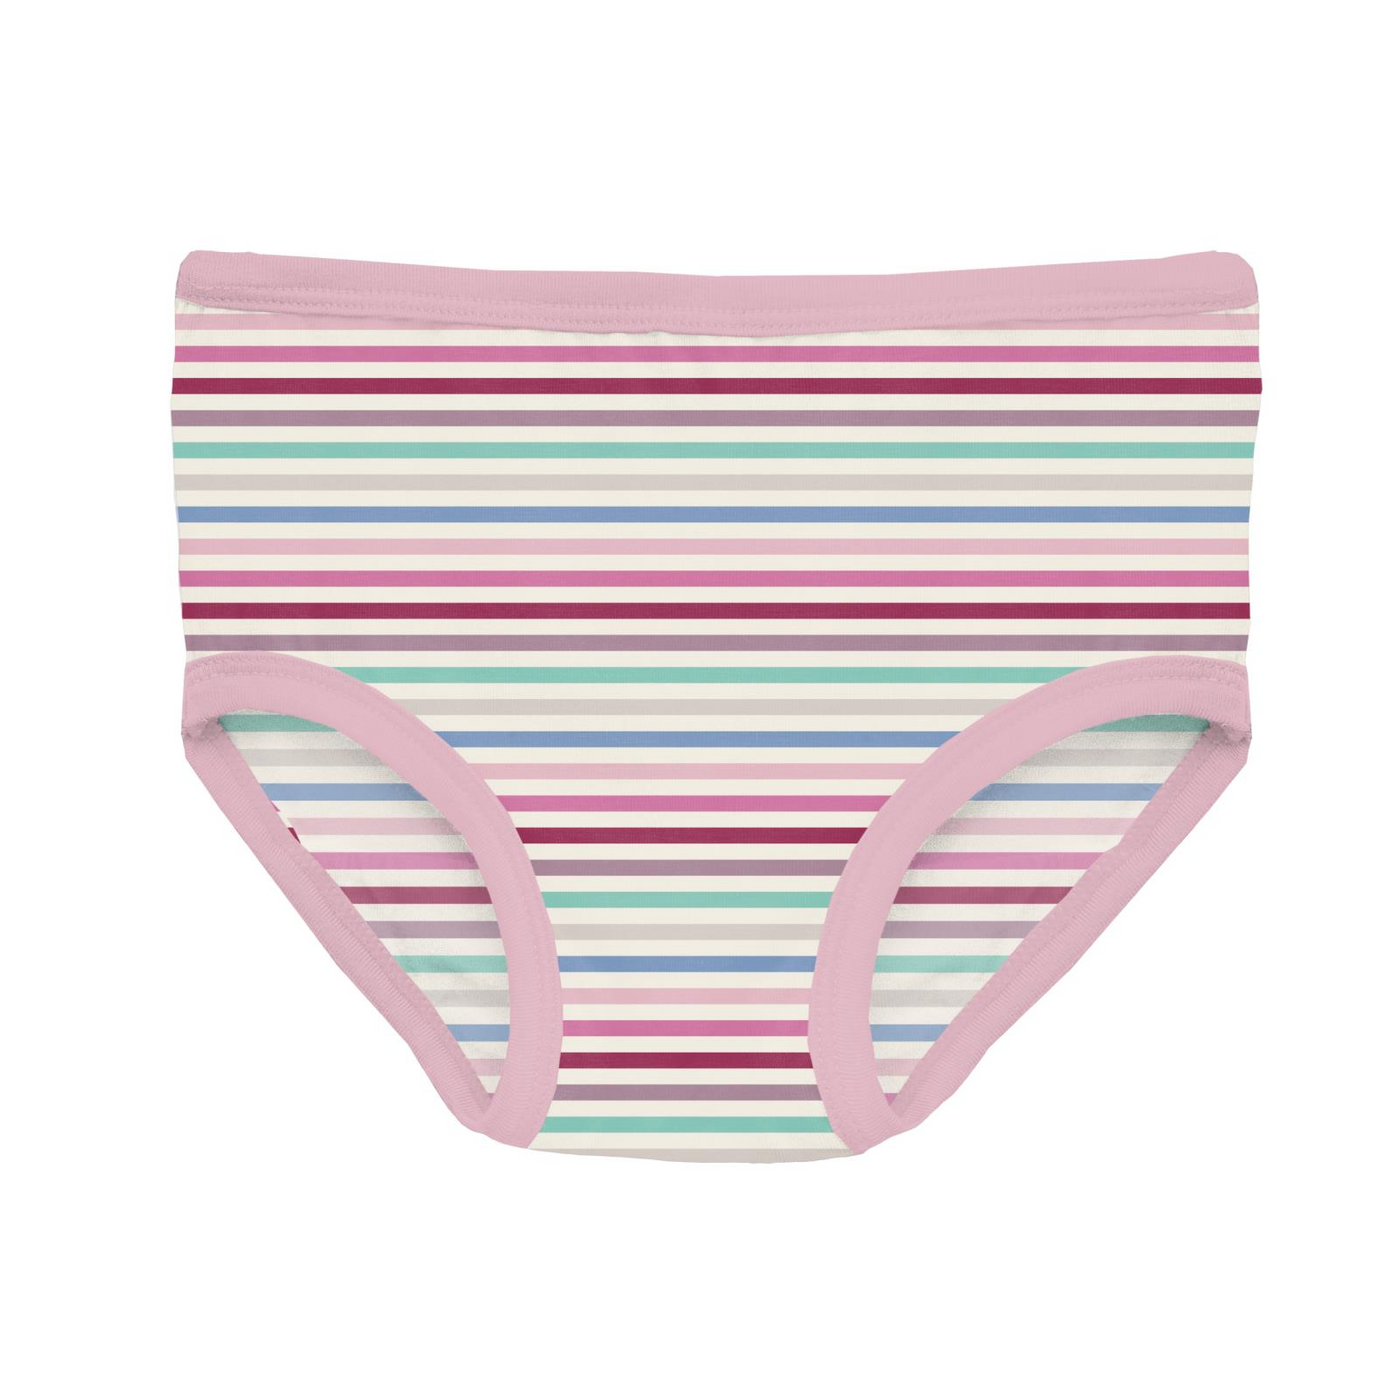 Kickee Pants Girl's Underwear Set of 3: Make Believe Stripe, Dream Blue & Cake Pop Candy Dreams